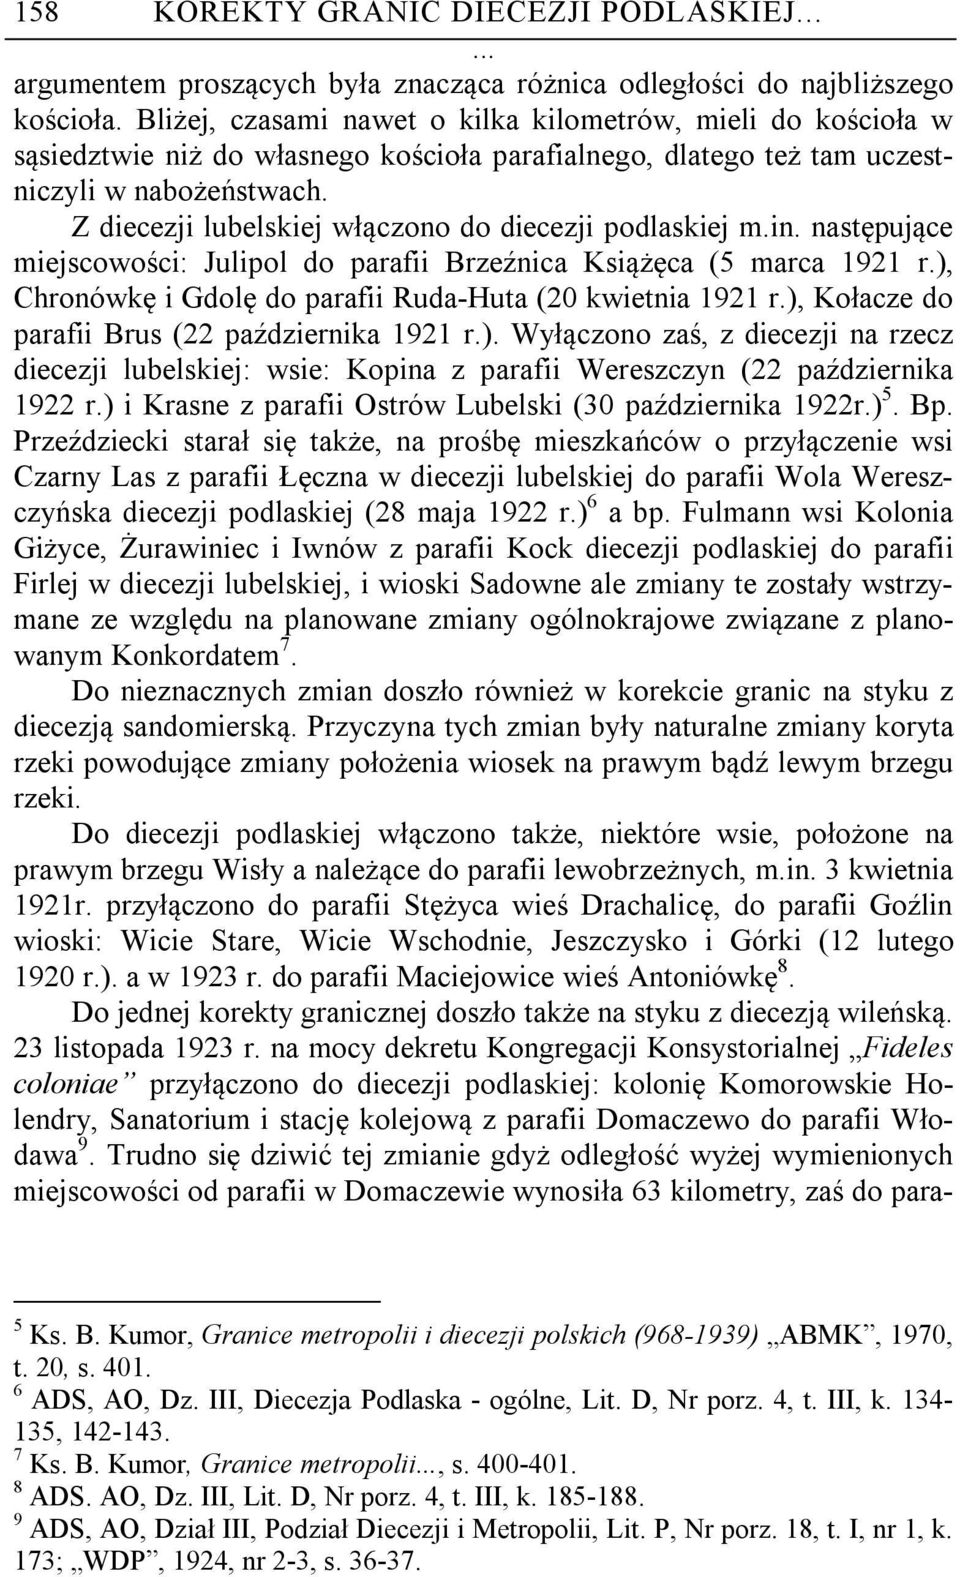 Z diecezji lubelskiej włączono do diecezji podlaskiej m.in. następujące miejscowości: Julipol do parafii Brzeźnica Książęca (5 marca 1921 r.